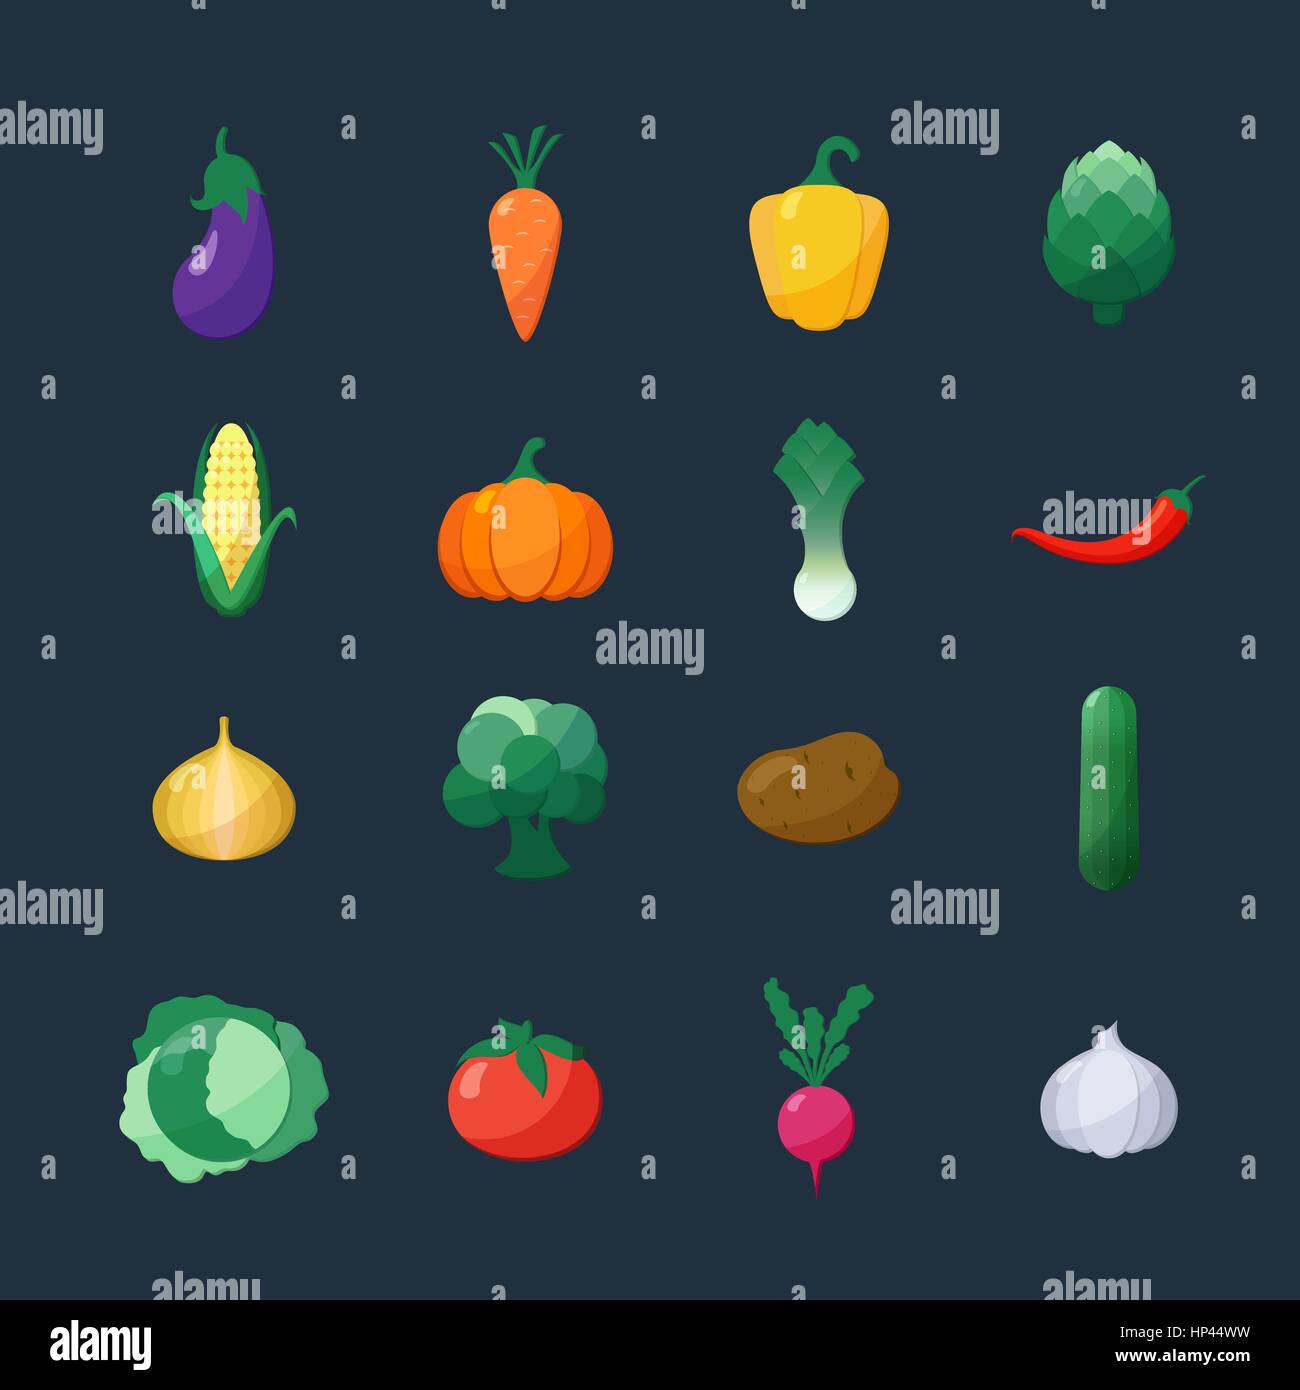 Vector Icons Set Style plat de légumes sur fond sombre isolés à l'aubergine, la carotte, paprika, artichaut, maïs, radis, potiron, pomme de terre, poireau, P Illustration de Vecteur